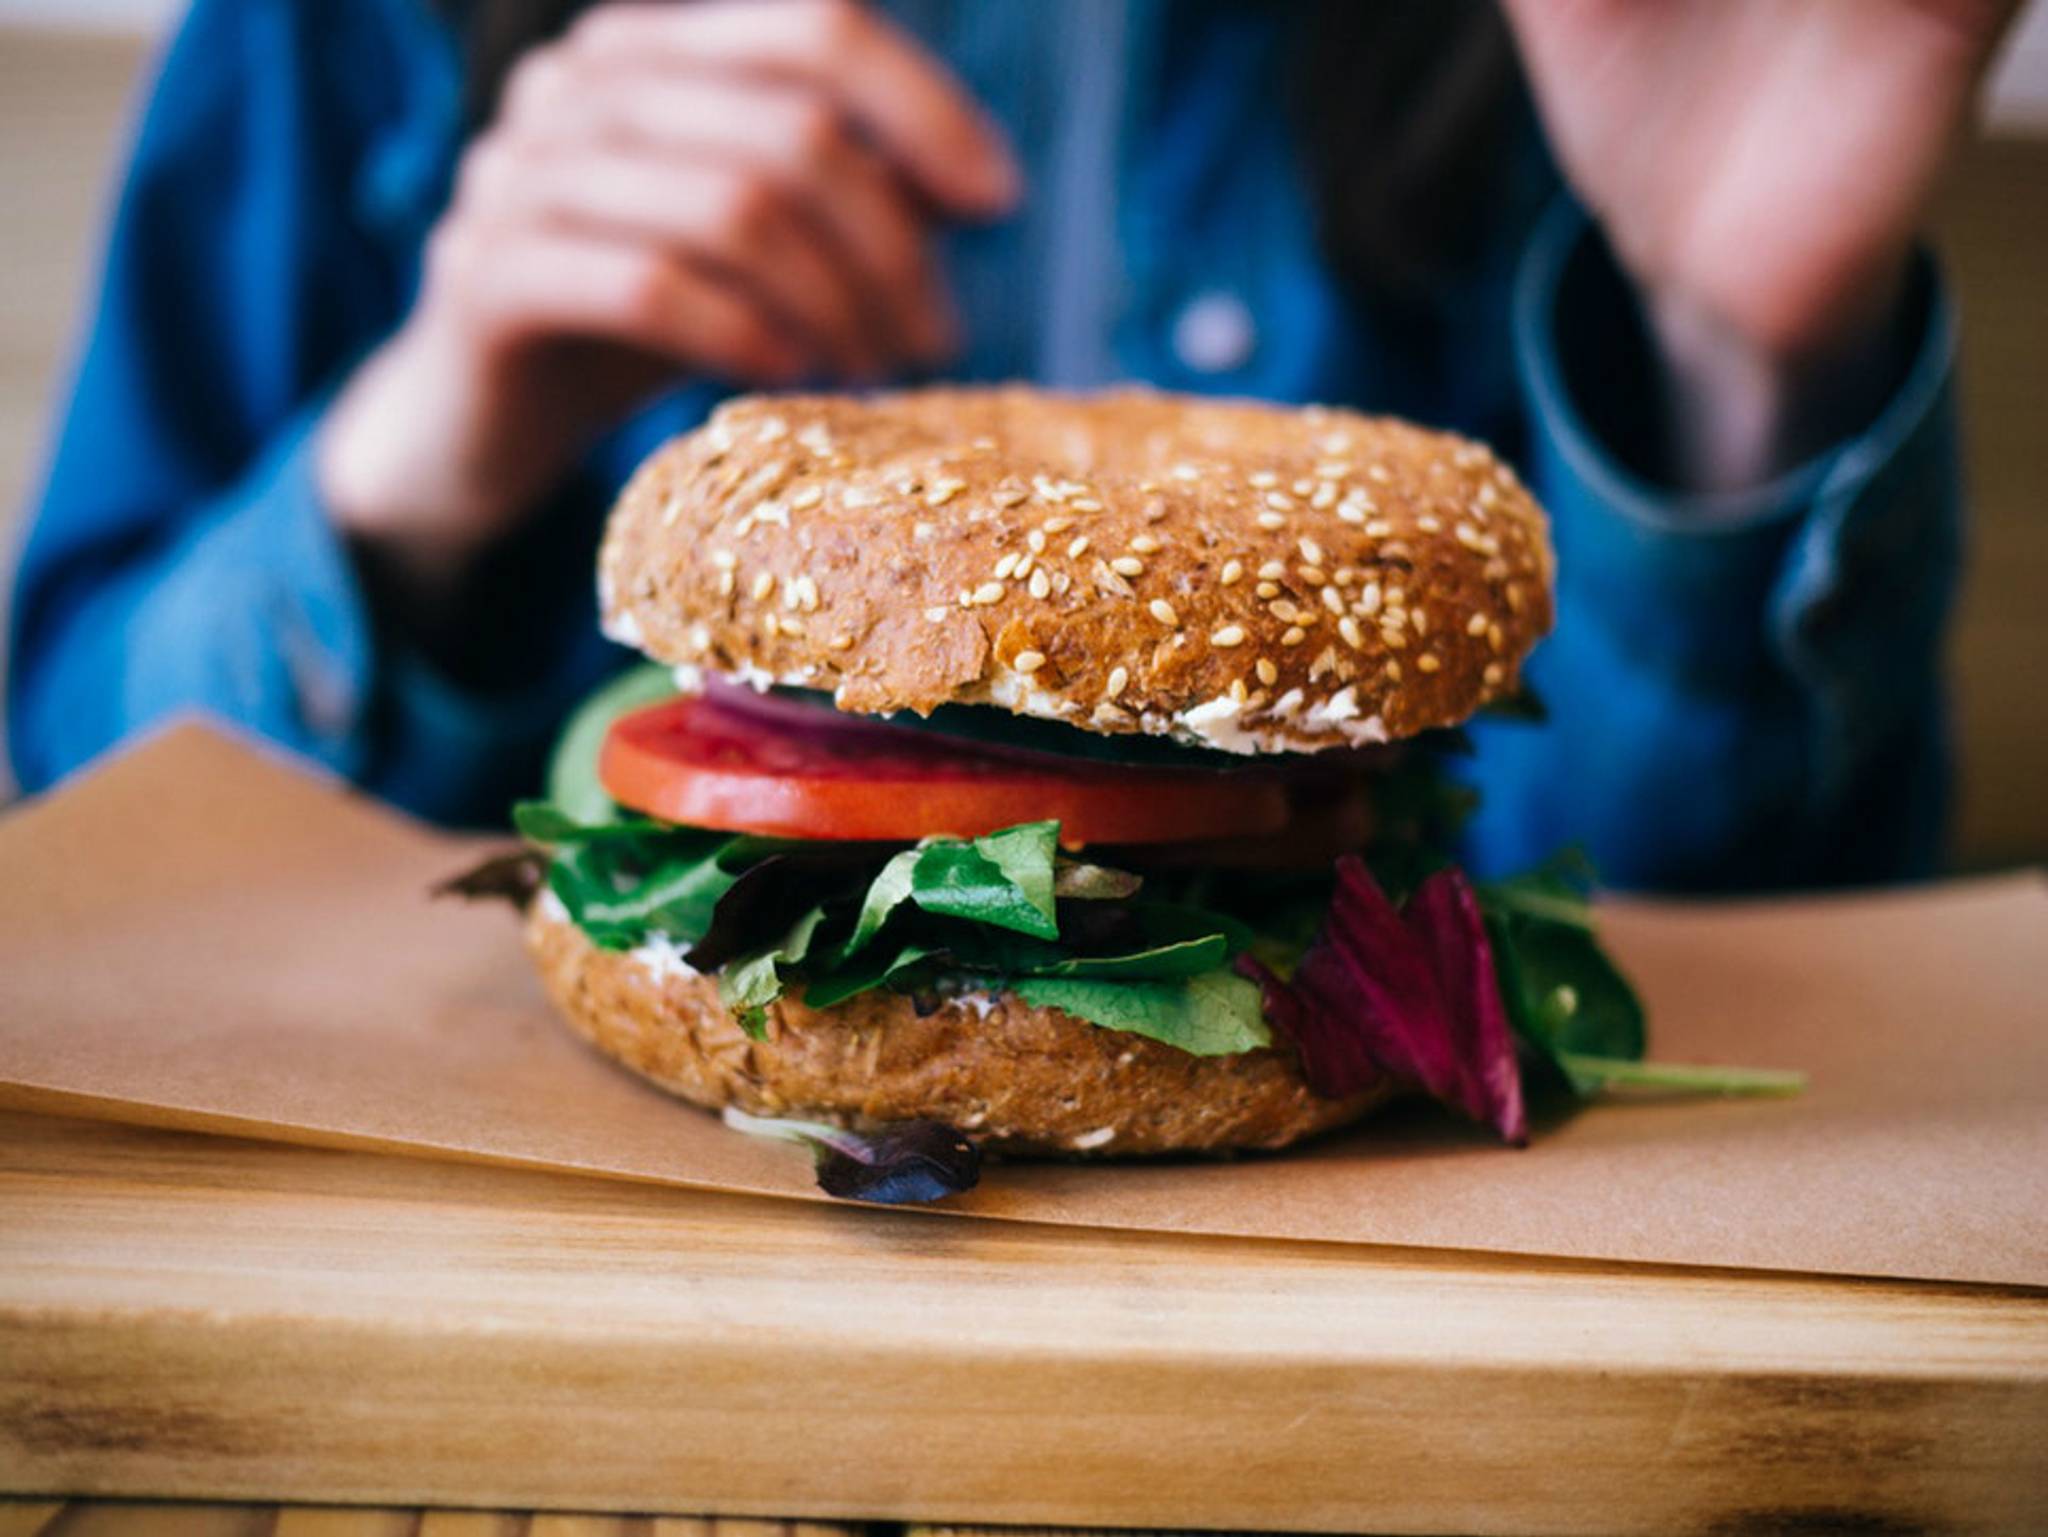 Tesco Beyond Meat burgers offer convenient veganism